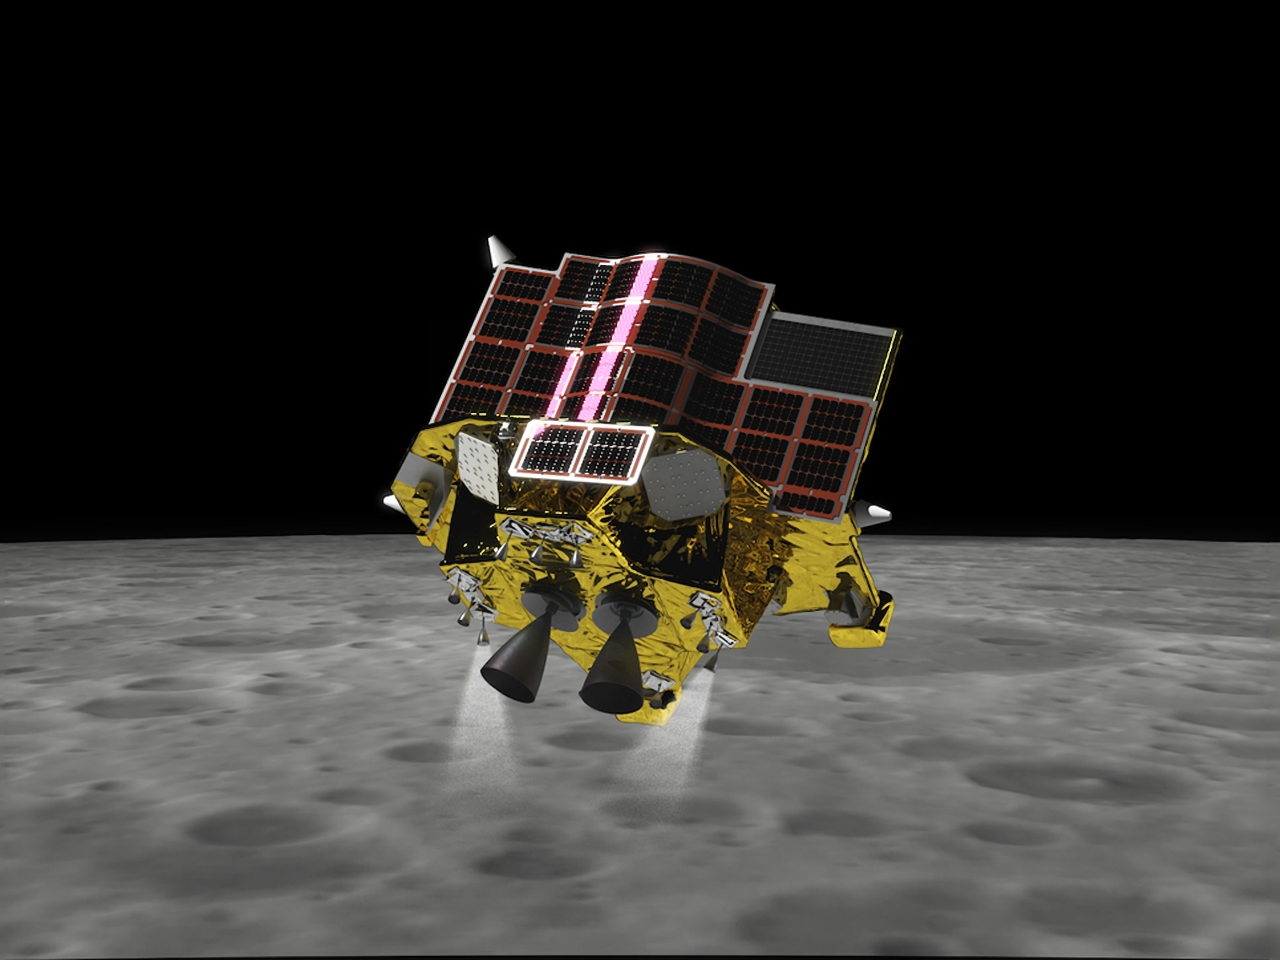 月着陸を目指す「SLIM」、月周回軌道投入に成功--探査機の状態も正常